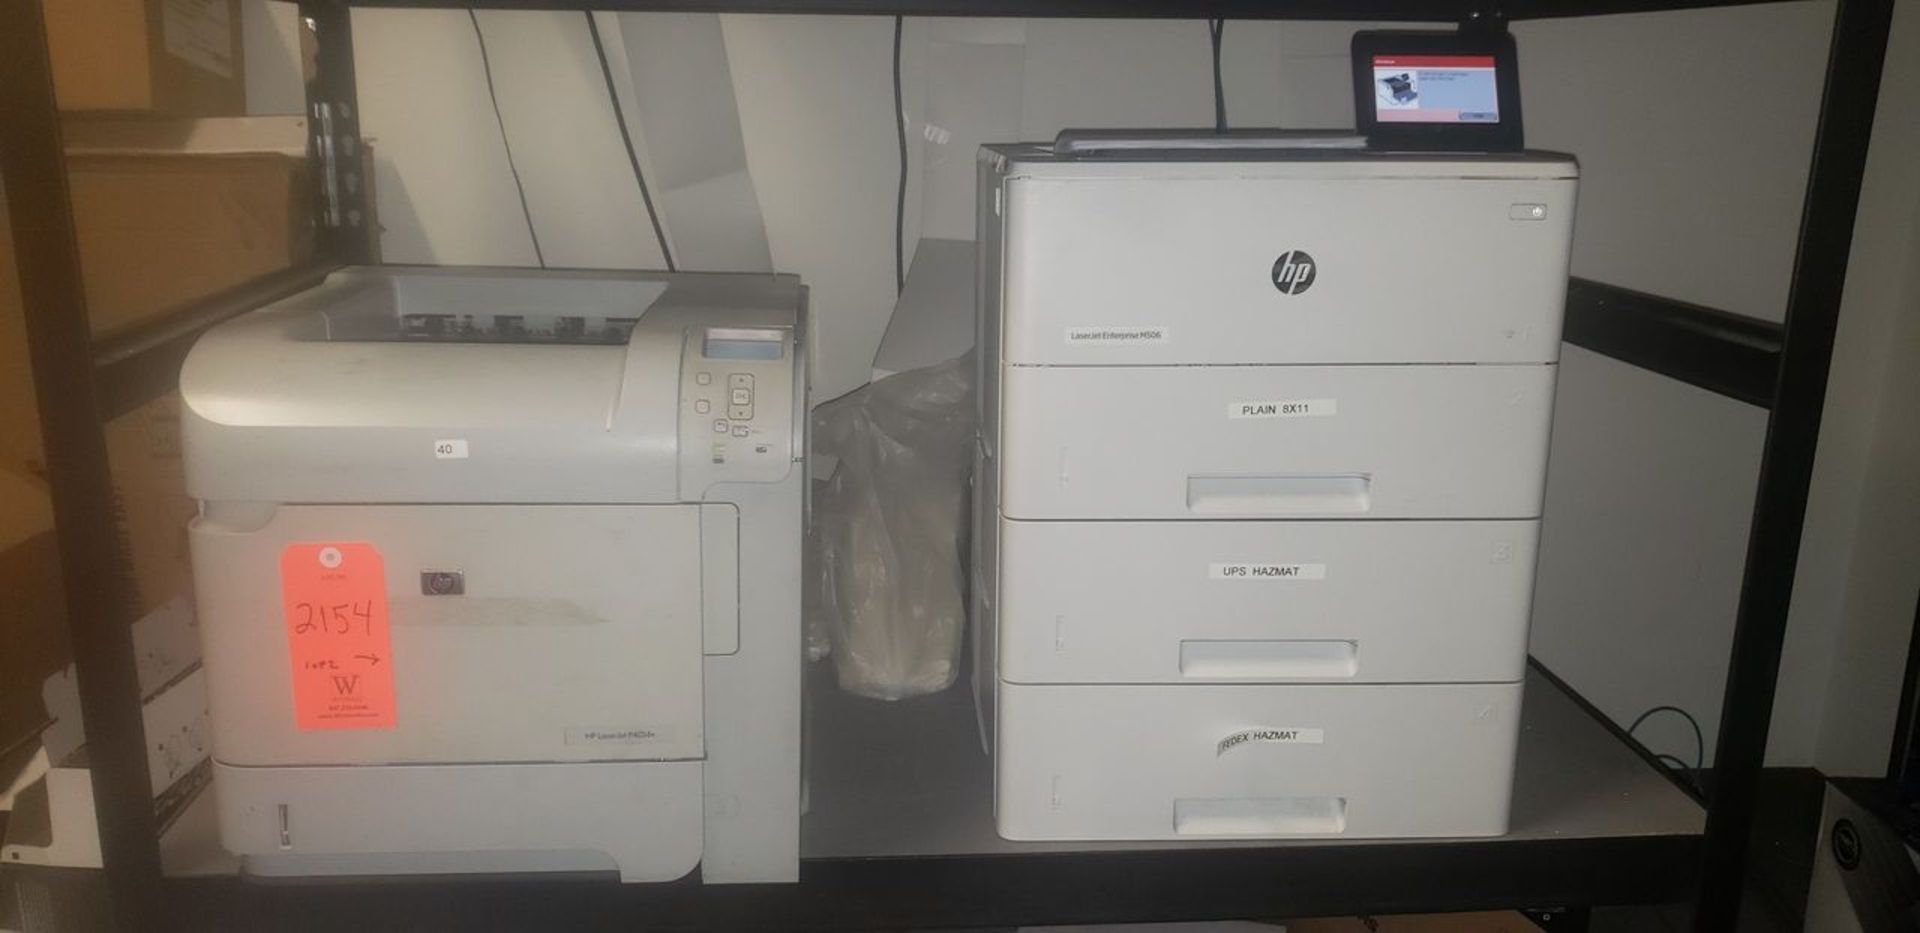 Lot - (2) Hewlett Packard Printers; (1) HP LaserJet P4014N, and (1) Laserjet Enterprise M506 - (